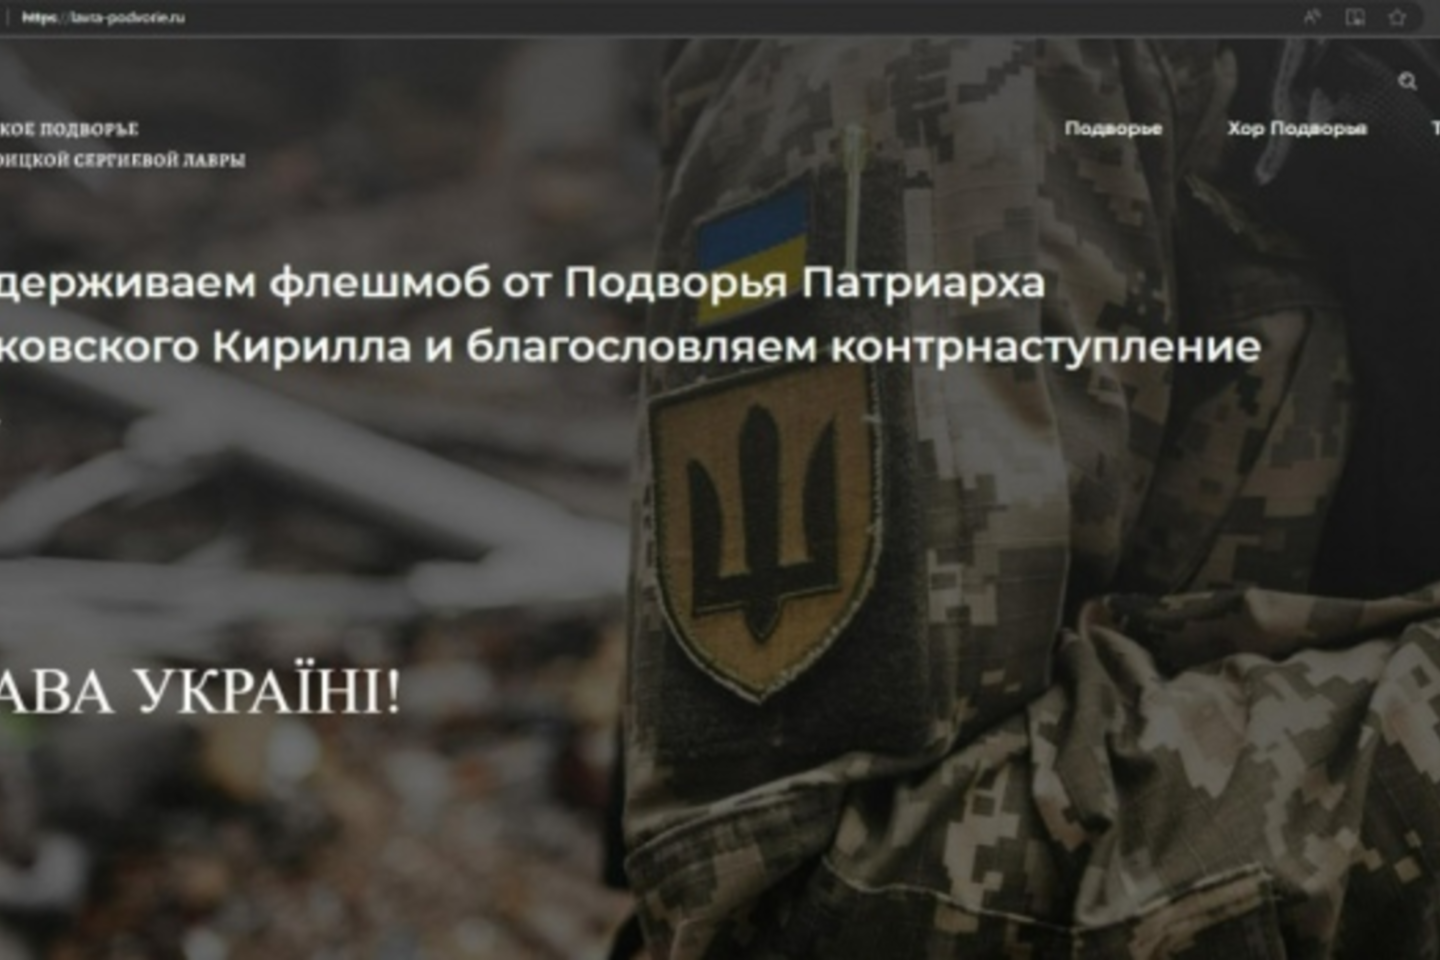  Svetainėse paskelbtas turinys, palaikantis Ukrainos ginkluotąsias pajėgas.<br> Ekrano nuotr.